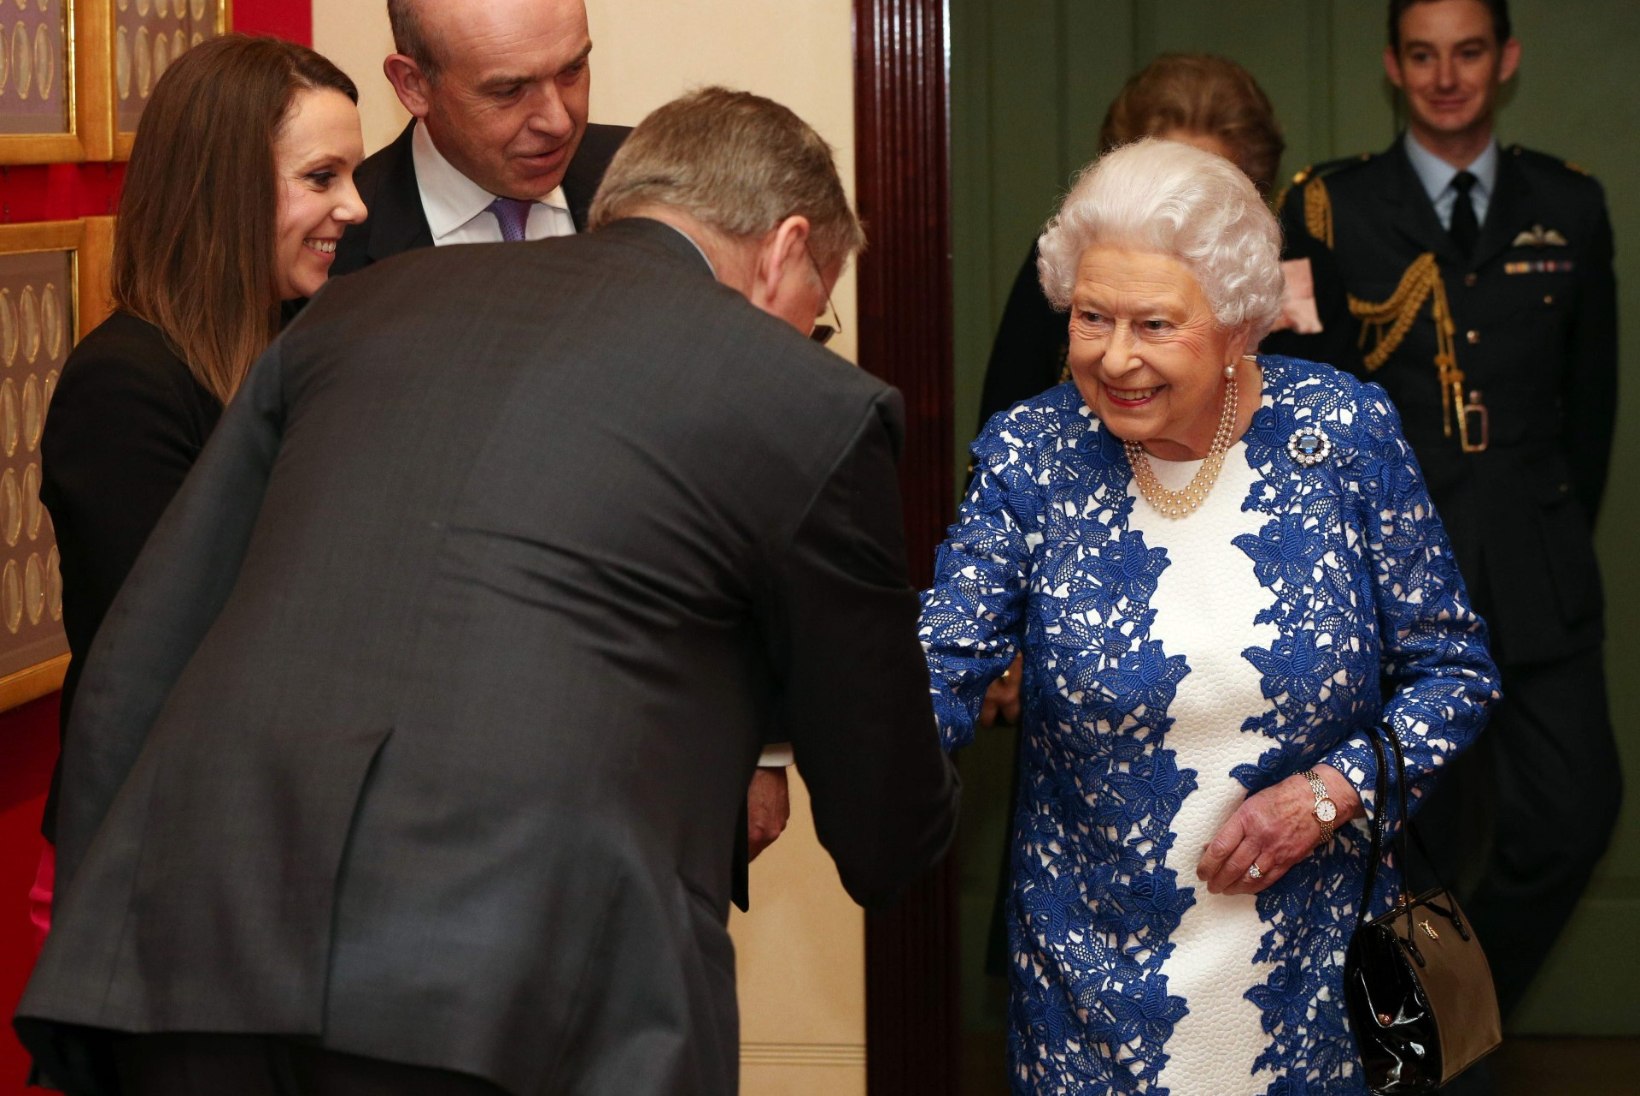 Elizabeth II annab sõrmuse ja käekoti abil oma saatjaskonnale salajasi signaale